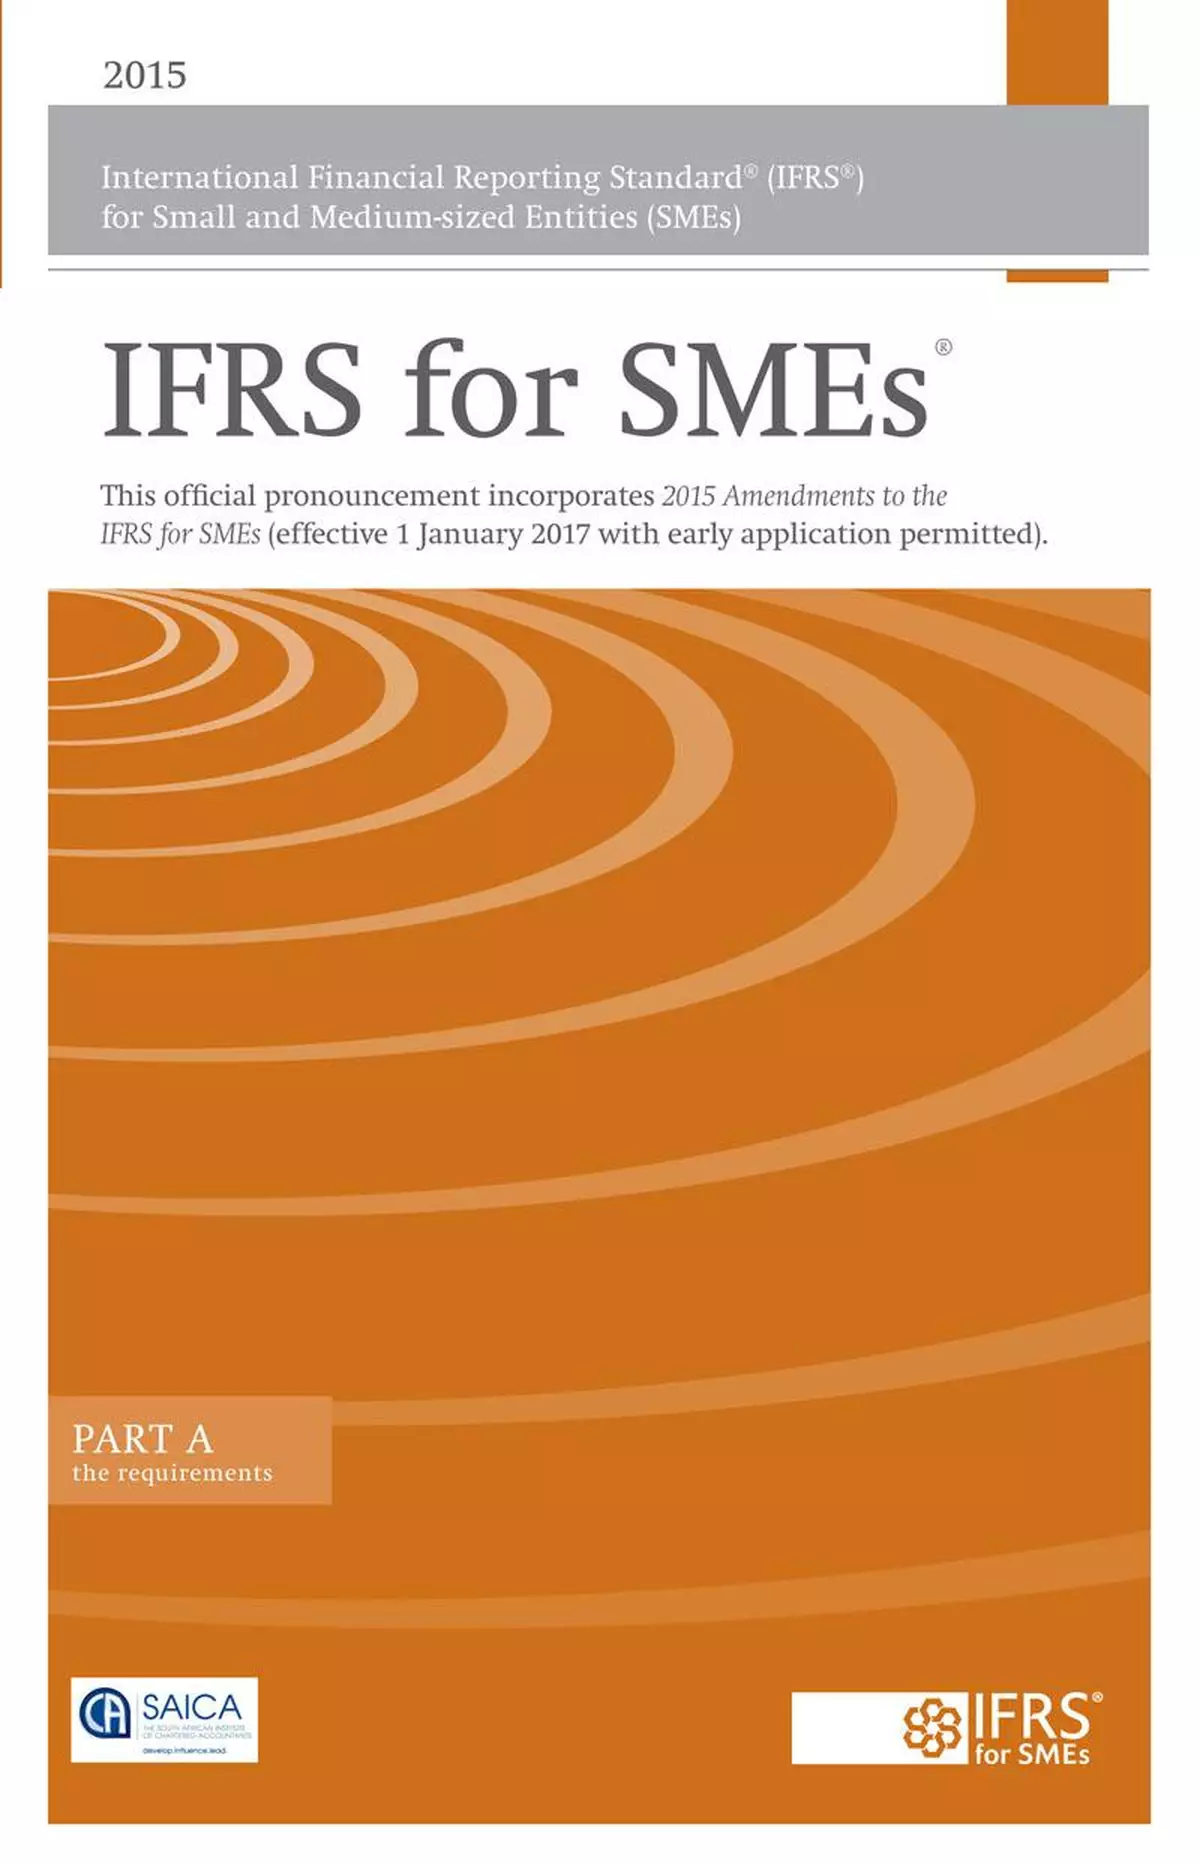 徵求《中小企業國際財務報告準則》修訂意見